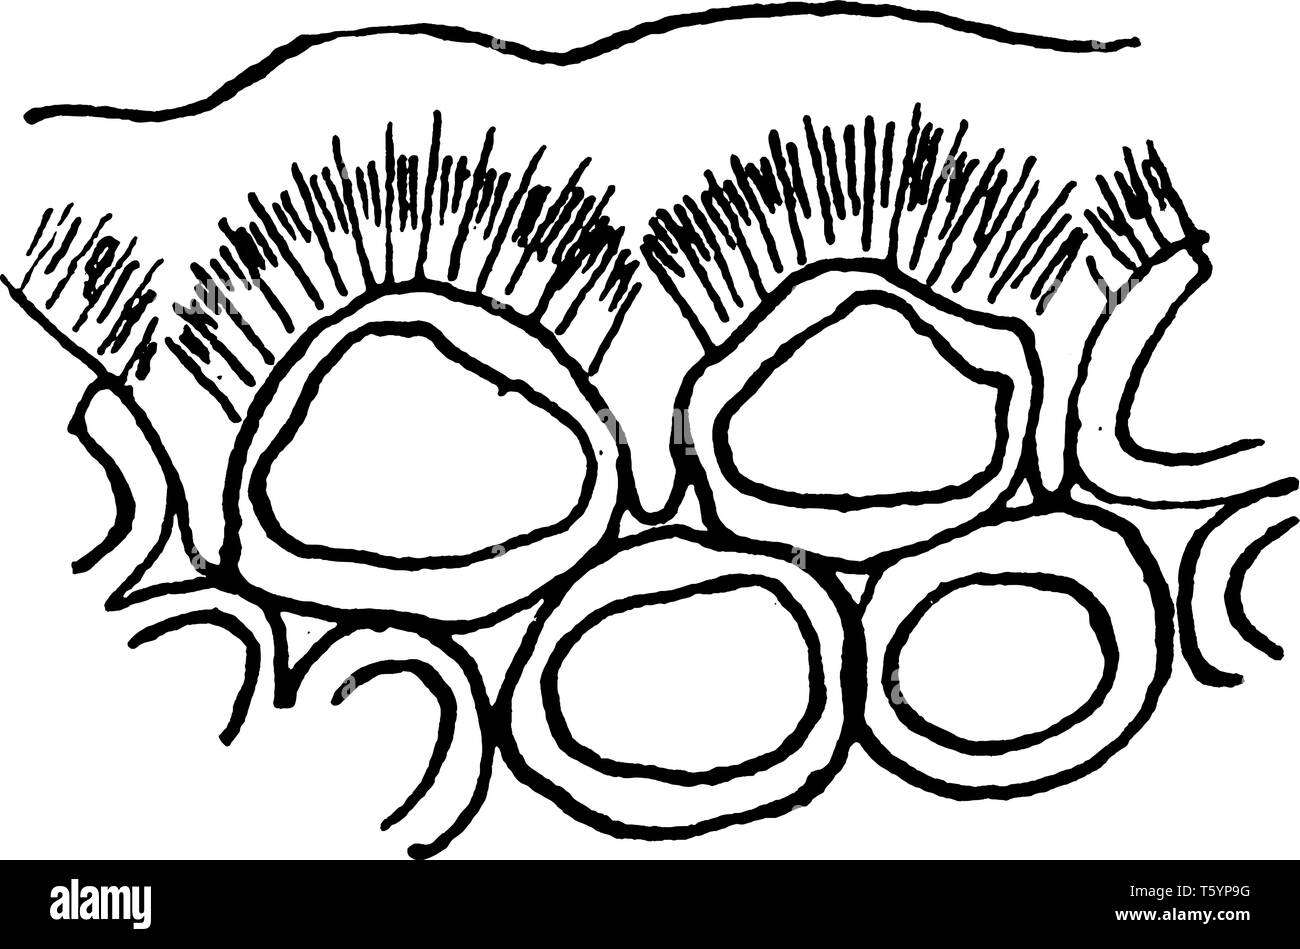 Ein Bild von zwei Zellen der Epidermis im Querschnitt zeigt eine verdickte Außenwand in drei Ebenen unterschieden, nämlich die äußere Schuppenschicht, einen cutin Stock Vektor